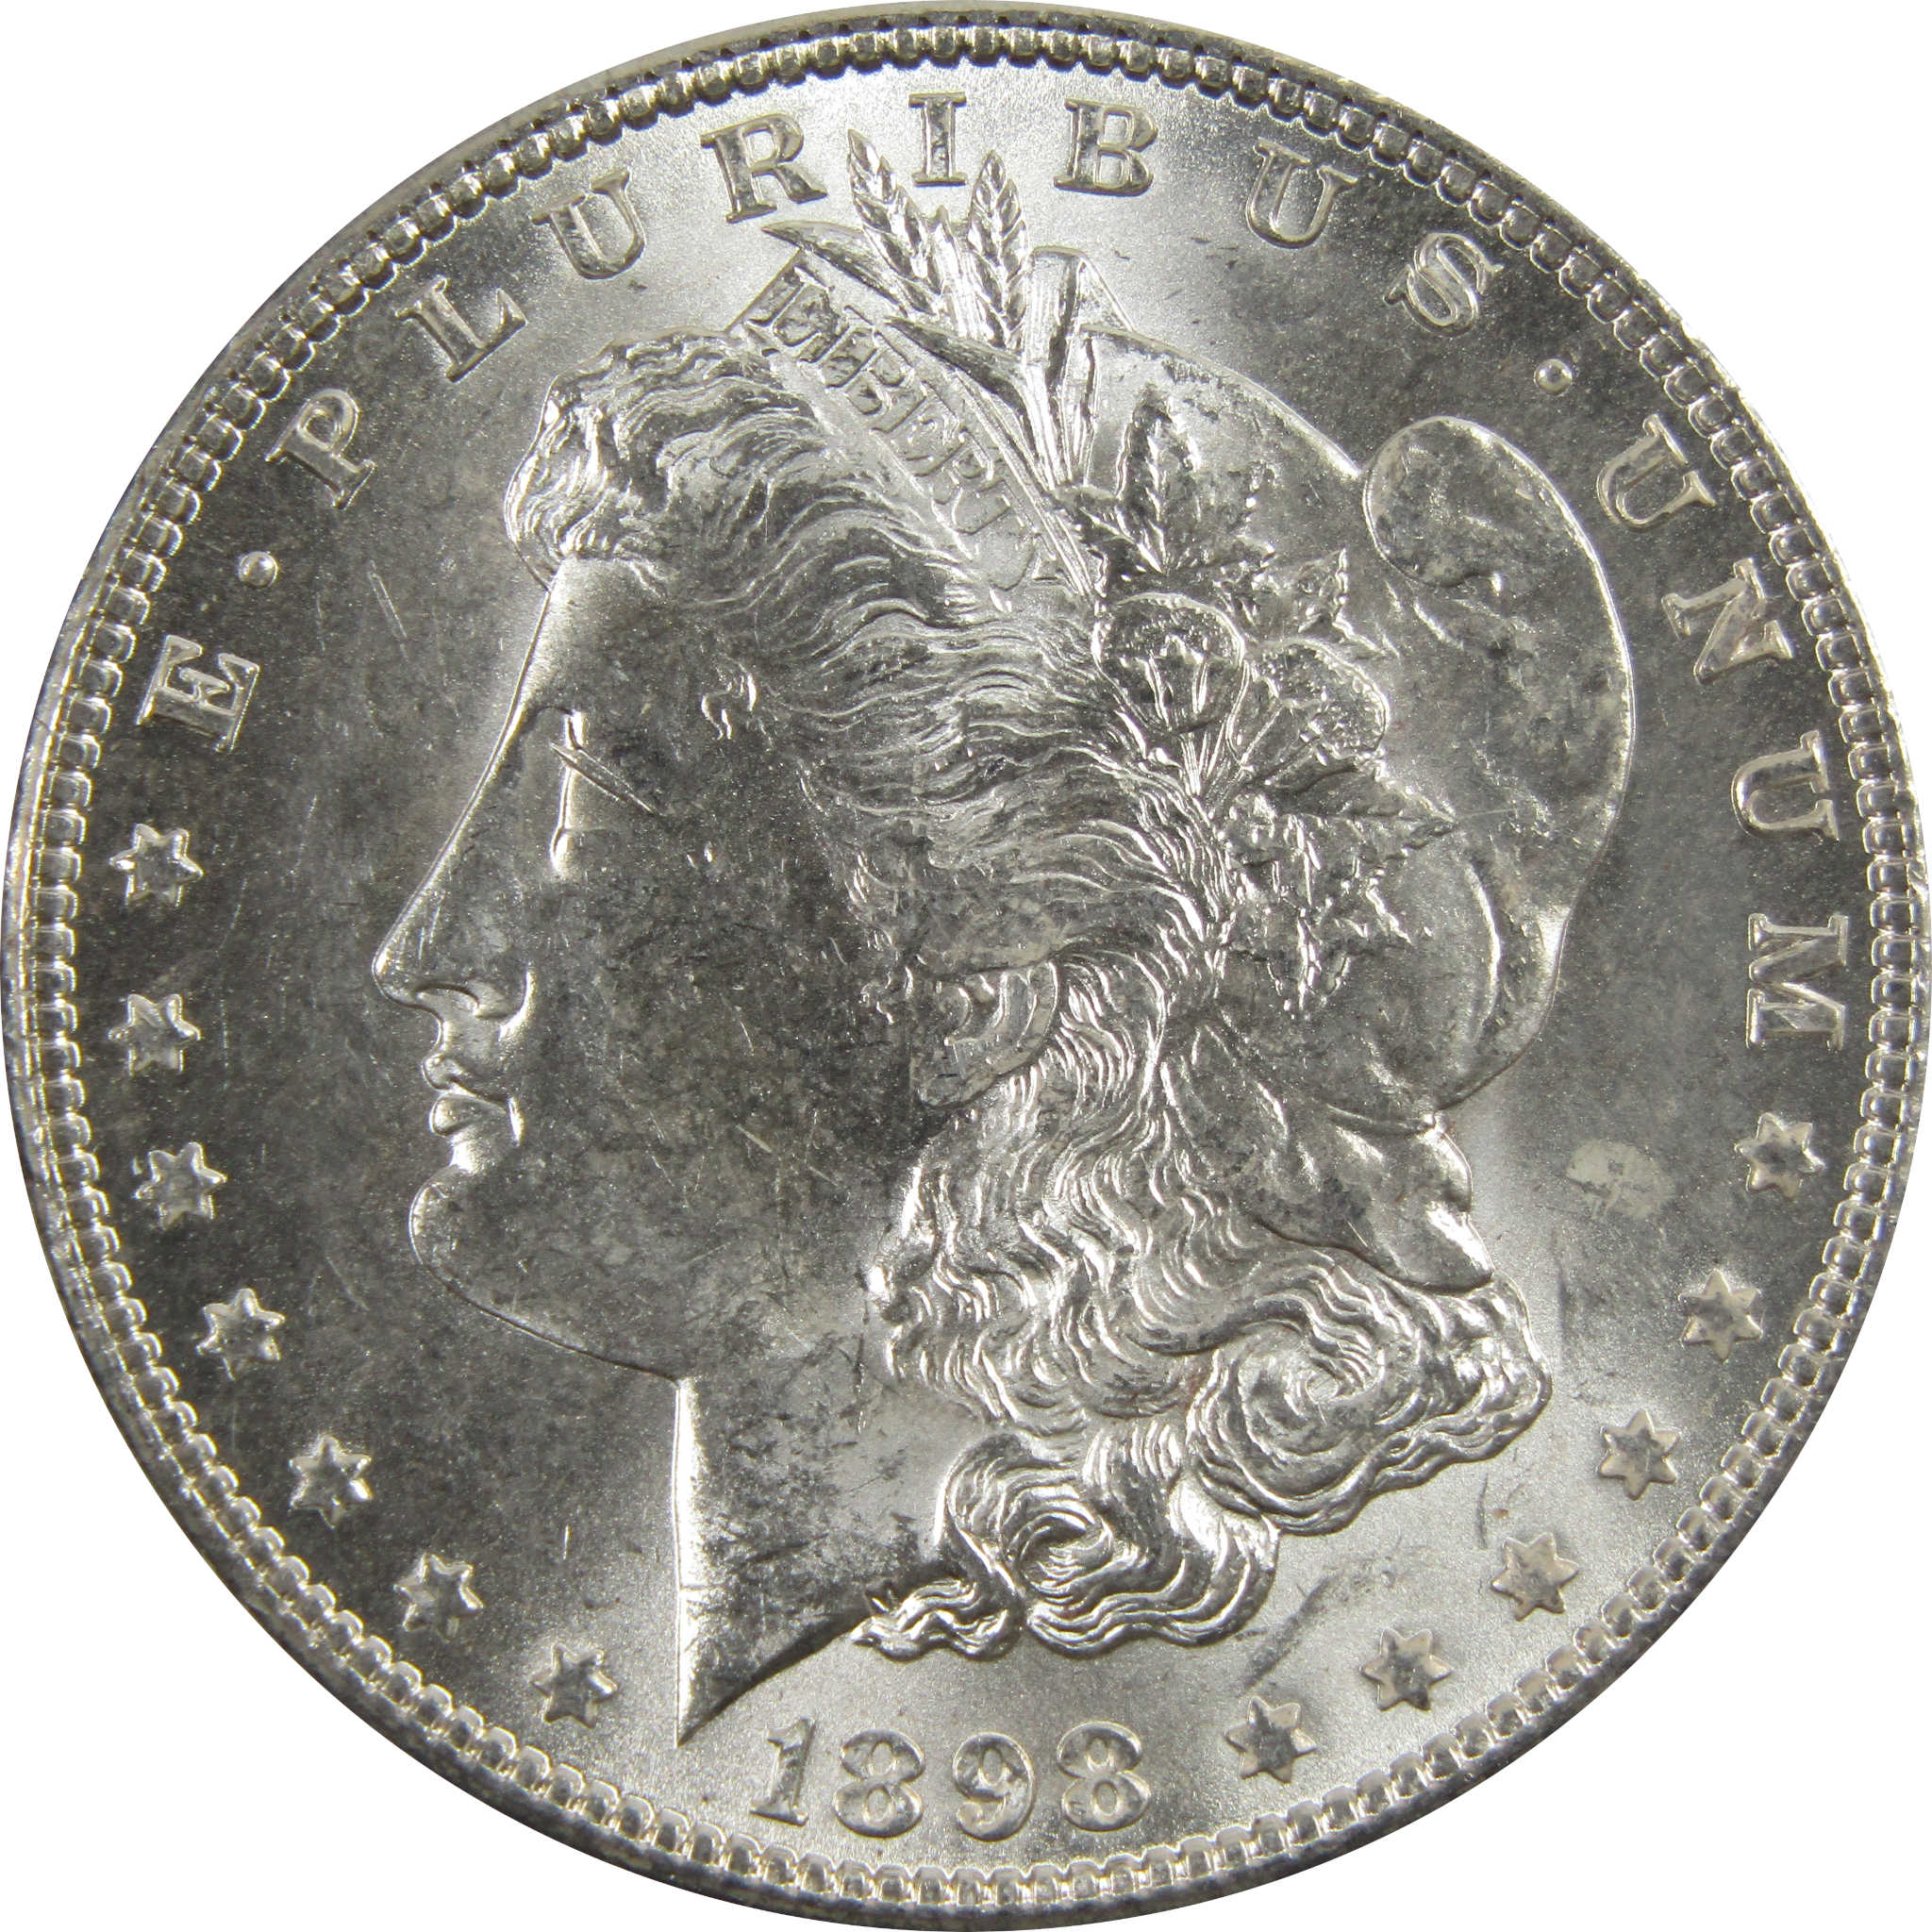 1898 O Morgan Dollar BU Uncirculated 90% Silver $1 Coin SKU:I5248 - Morgan coin - Morgan silver dollar - Morgan silver dollar for sale - Profile Coins &amp; Collectibles